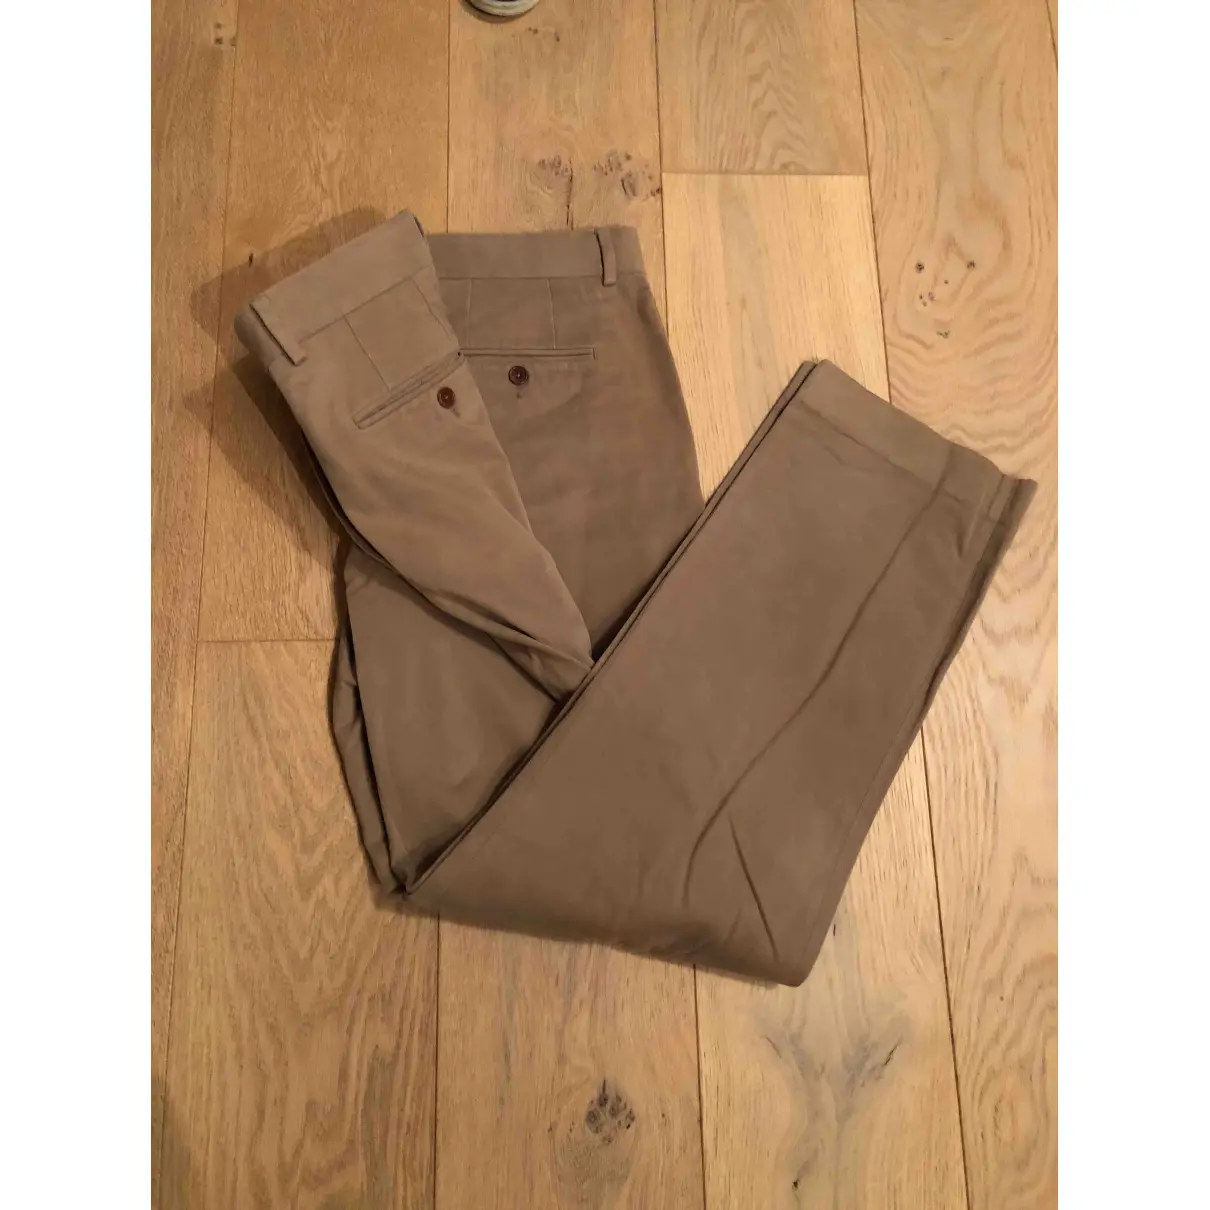 Buy Hackett London Trousers online